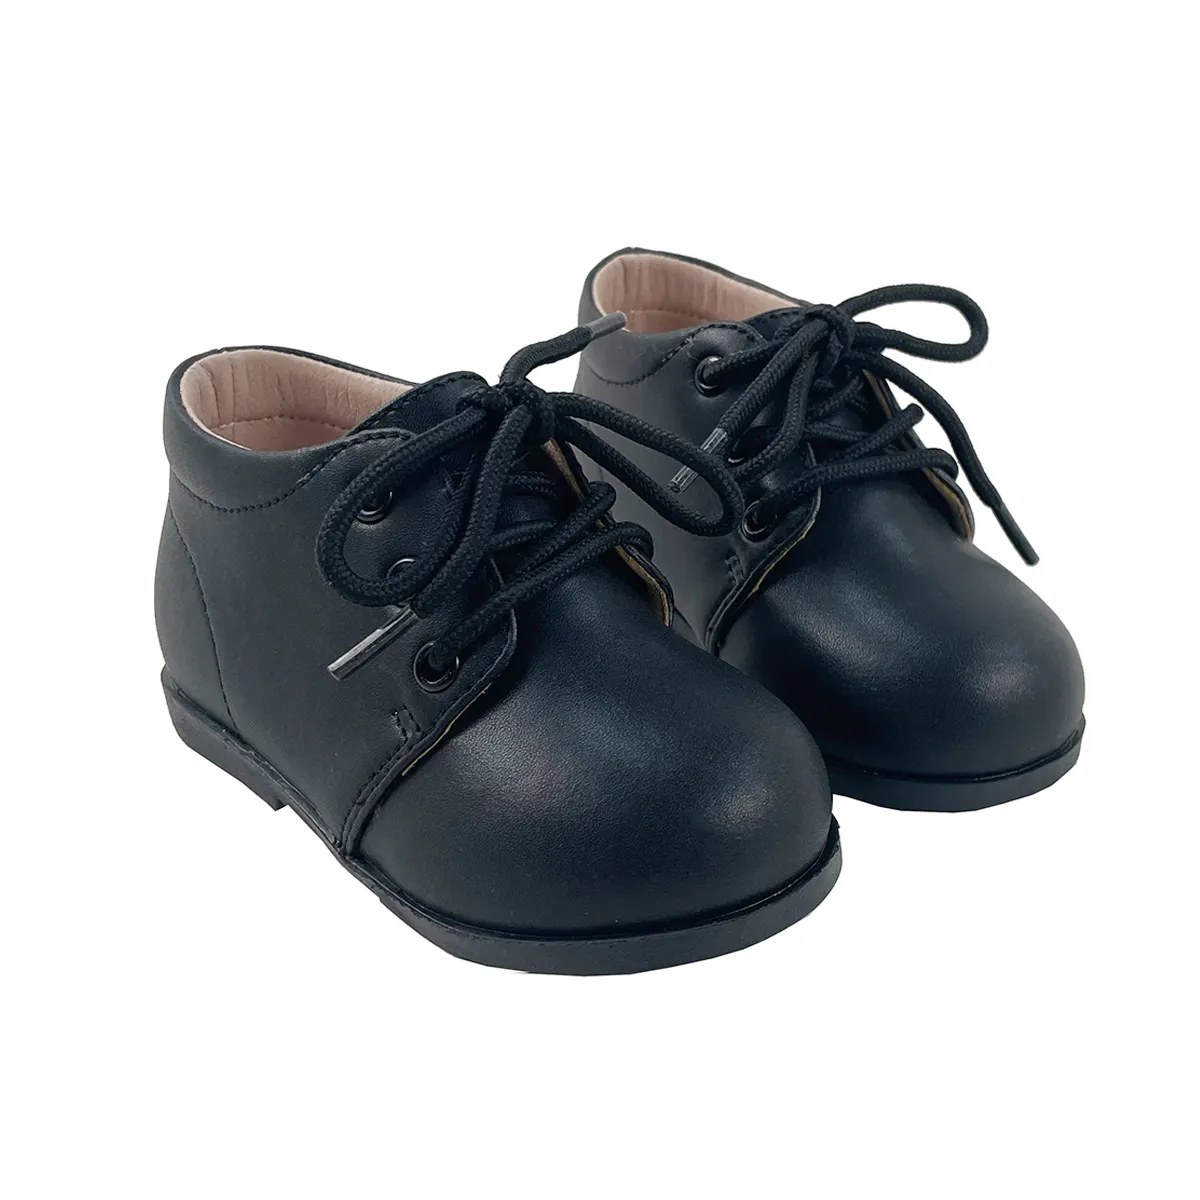 Toptan çocuk Unisex siyah beyaz deri 3 yıl stok bebek ayakkabıları yürümeye başlayan kız erkek spor ayakkabı için çocuk